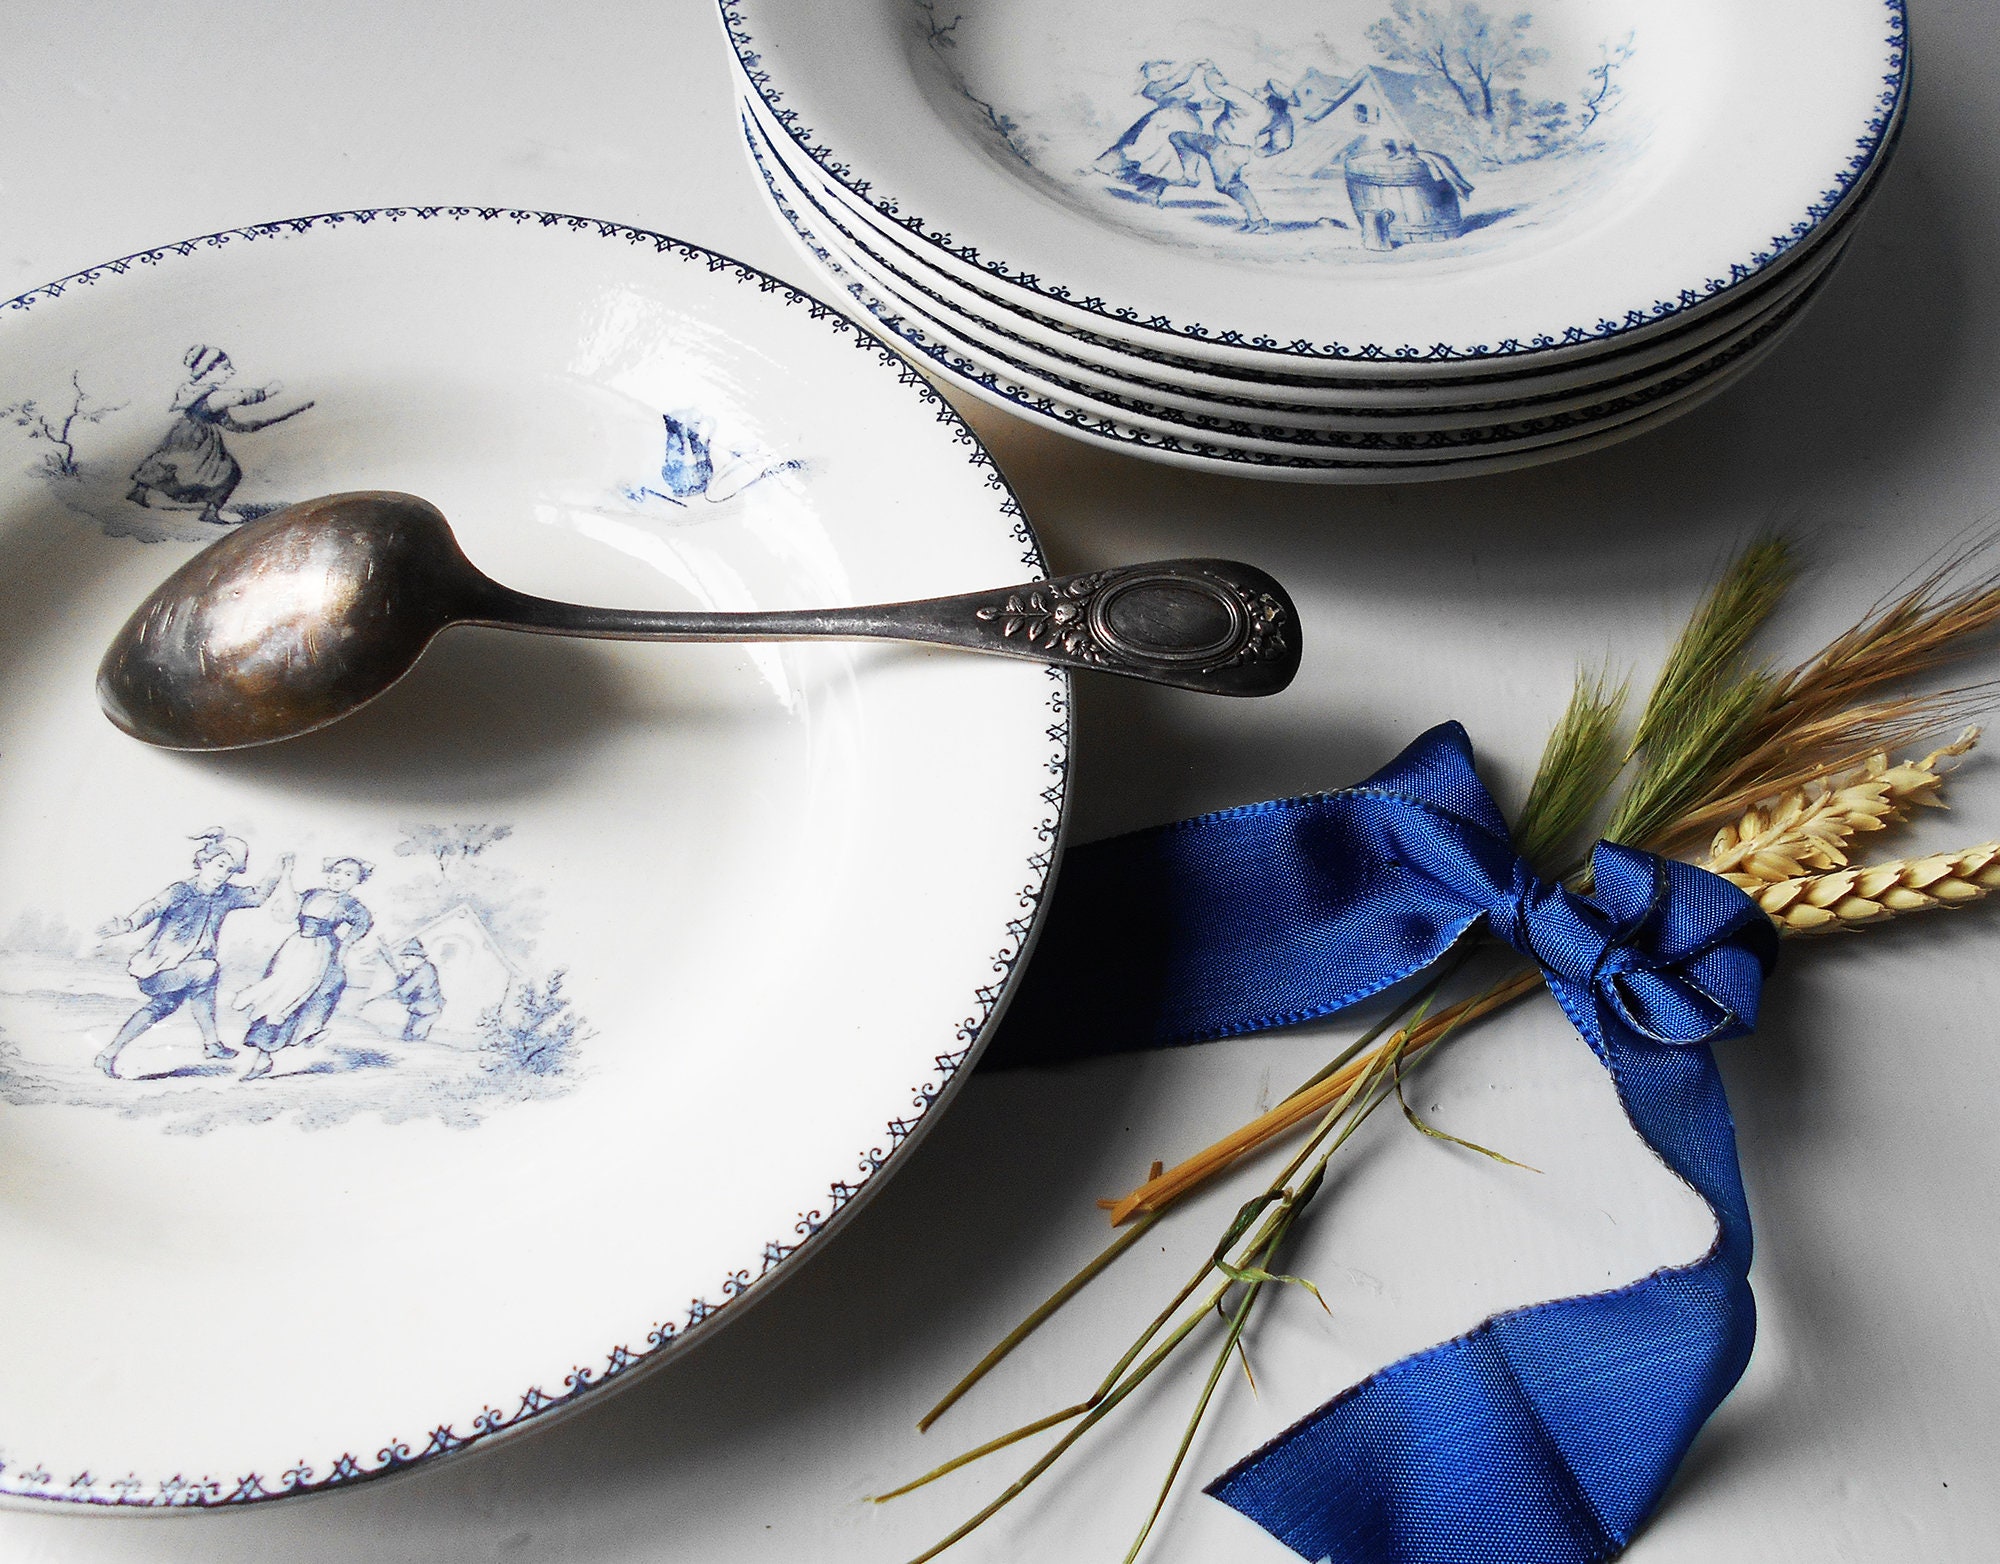 6 Plaques Français Antique Blanc et Bleu Ironstone 1800S Country Life Deep Plates Creil&montereau